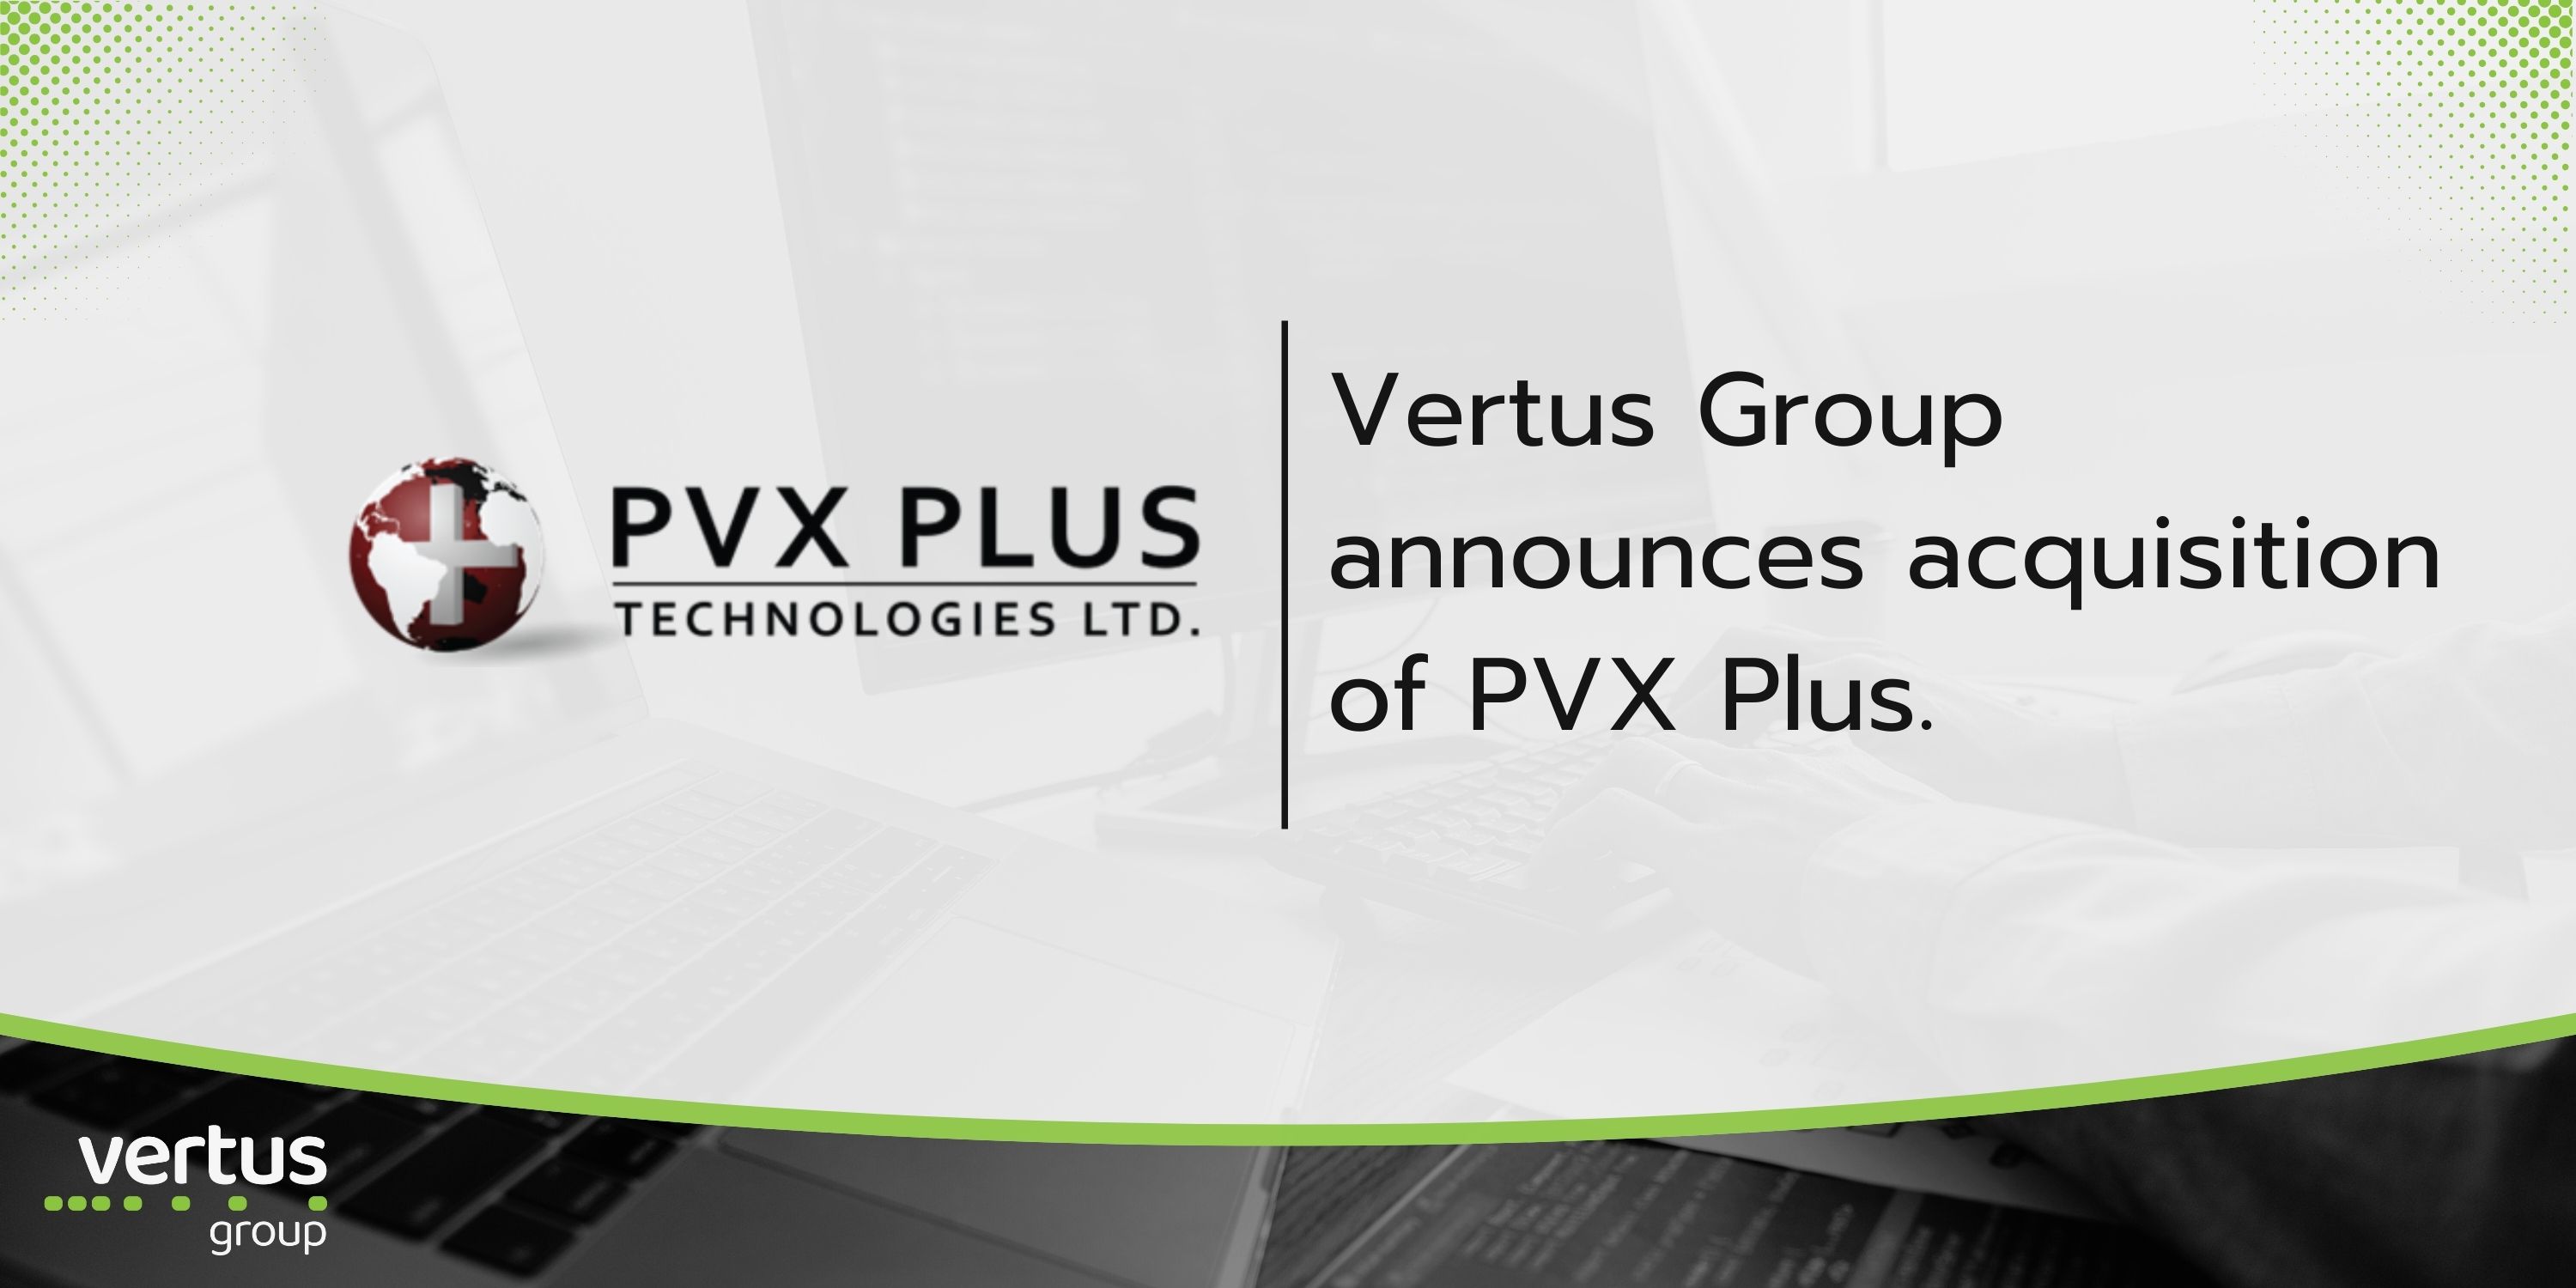 Acquisition: PVX Plus Technologies